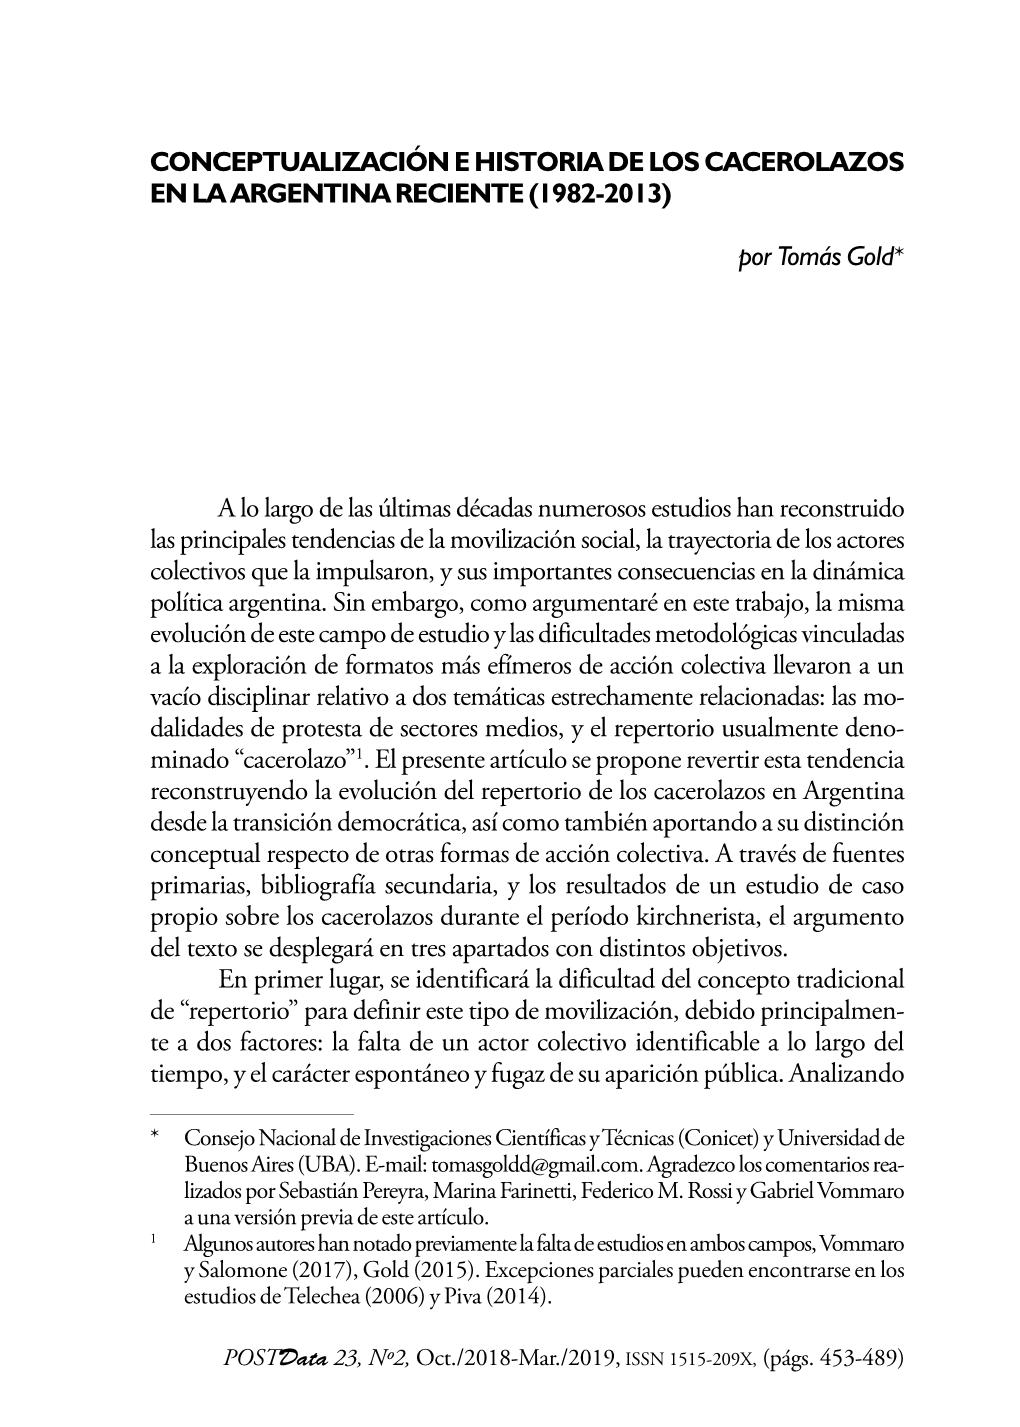 Conceptualización E Historia De Los Cacerolazos En La Argentina Reciente (1982-2013)